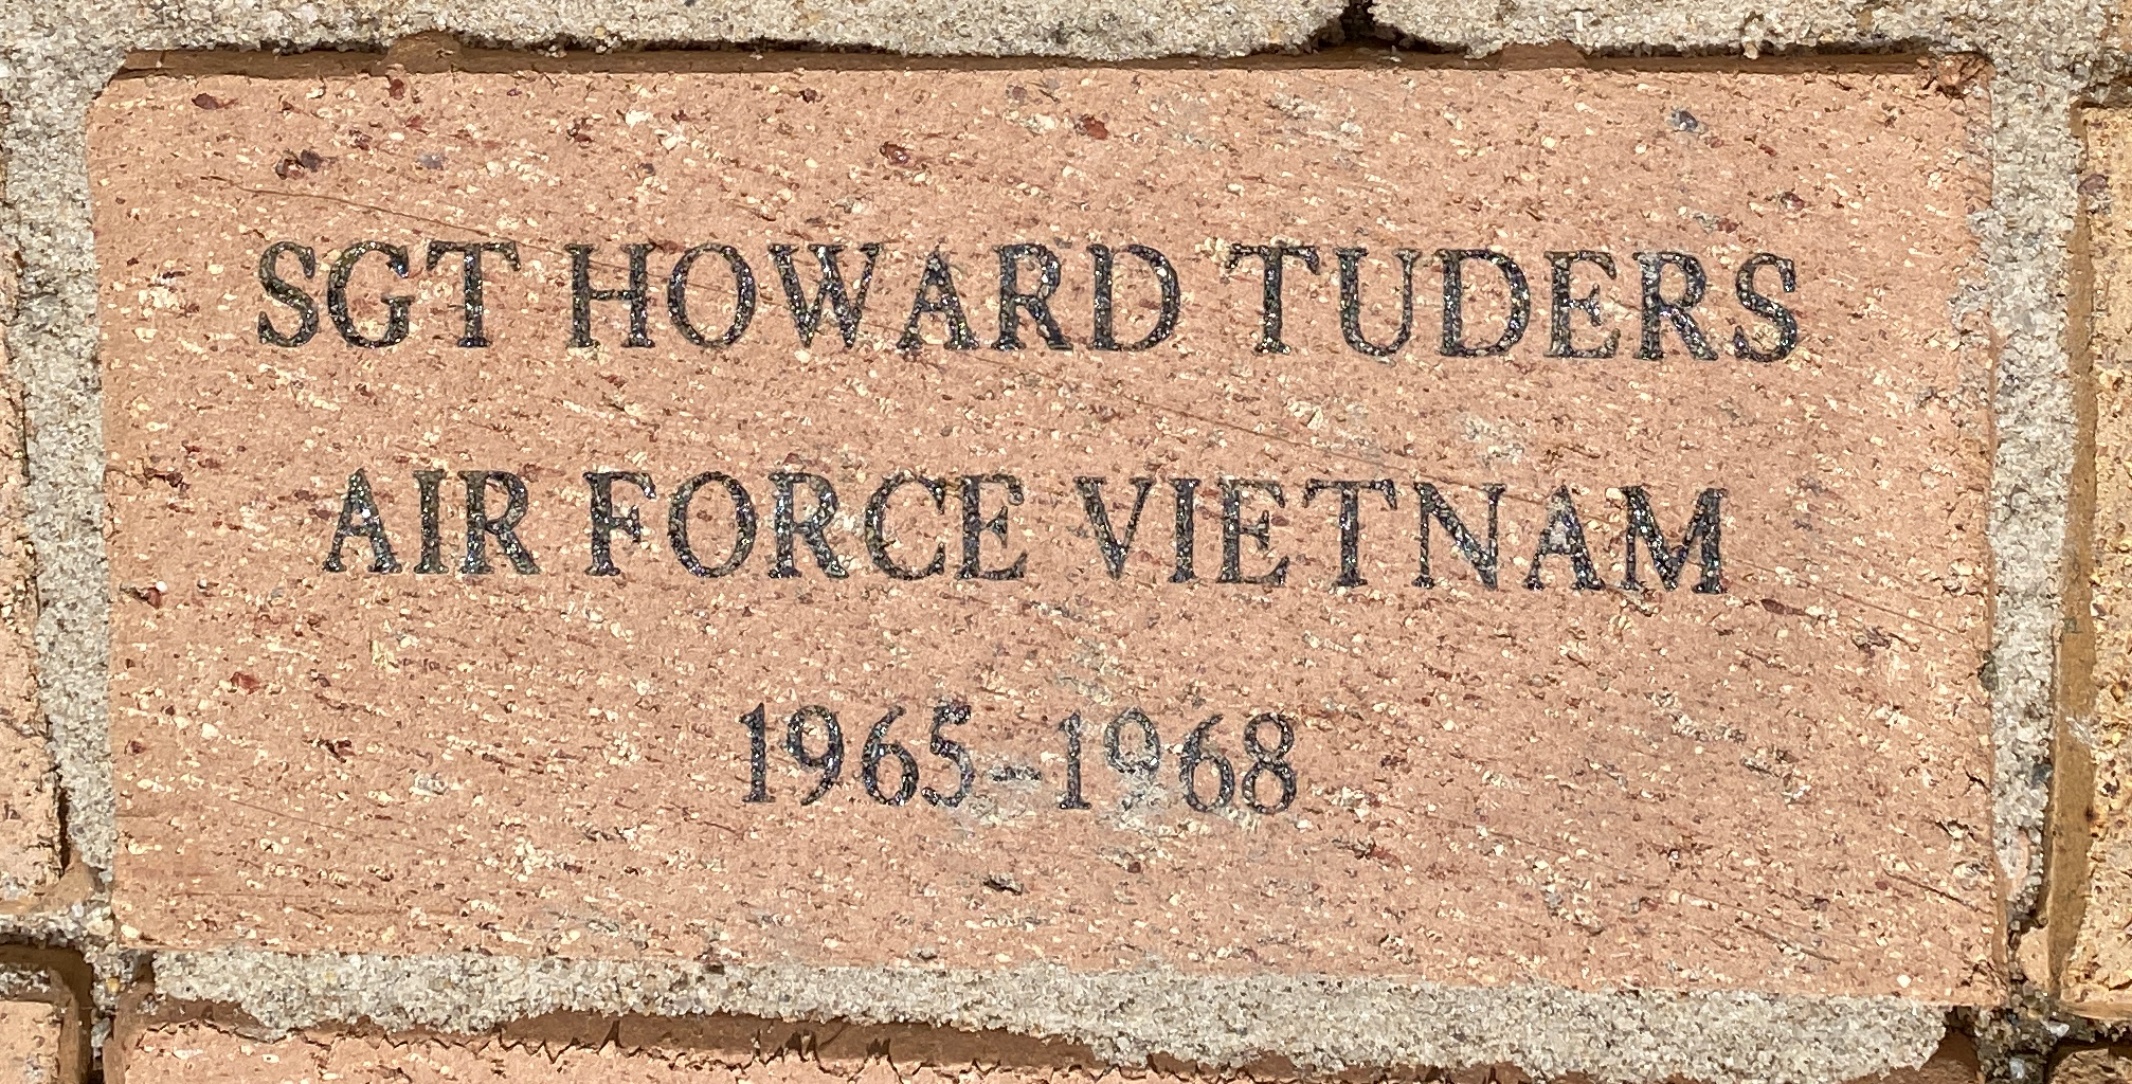 SGT HOWARD TUDERS AIR FORCE VIETNAM 1965-1968